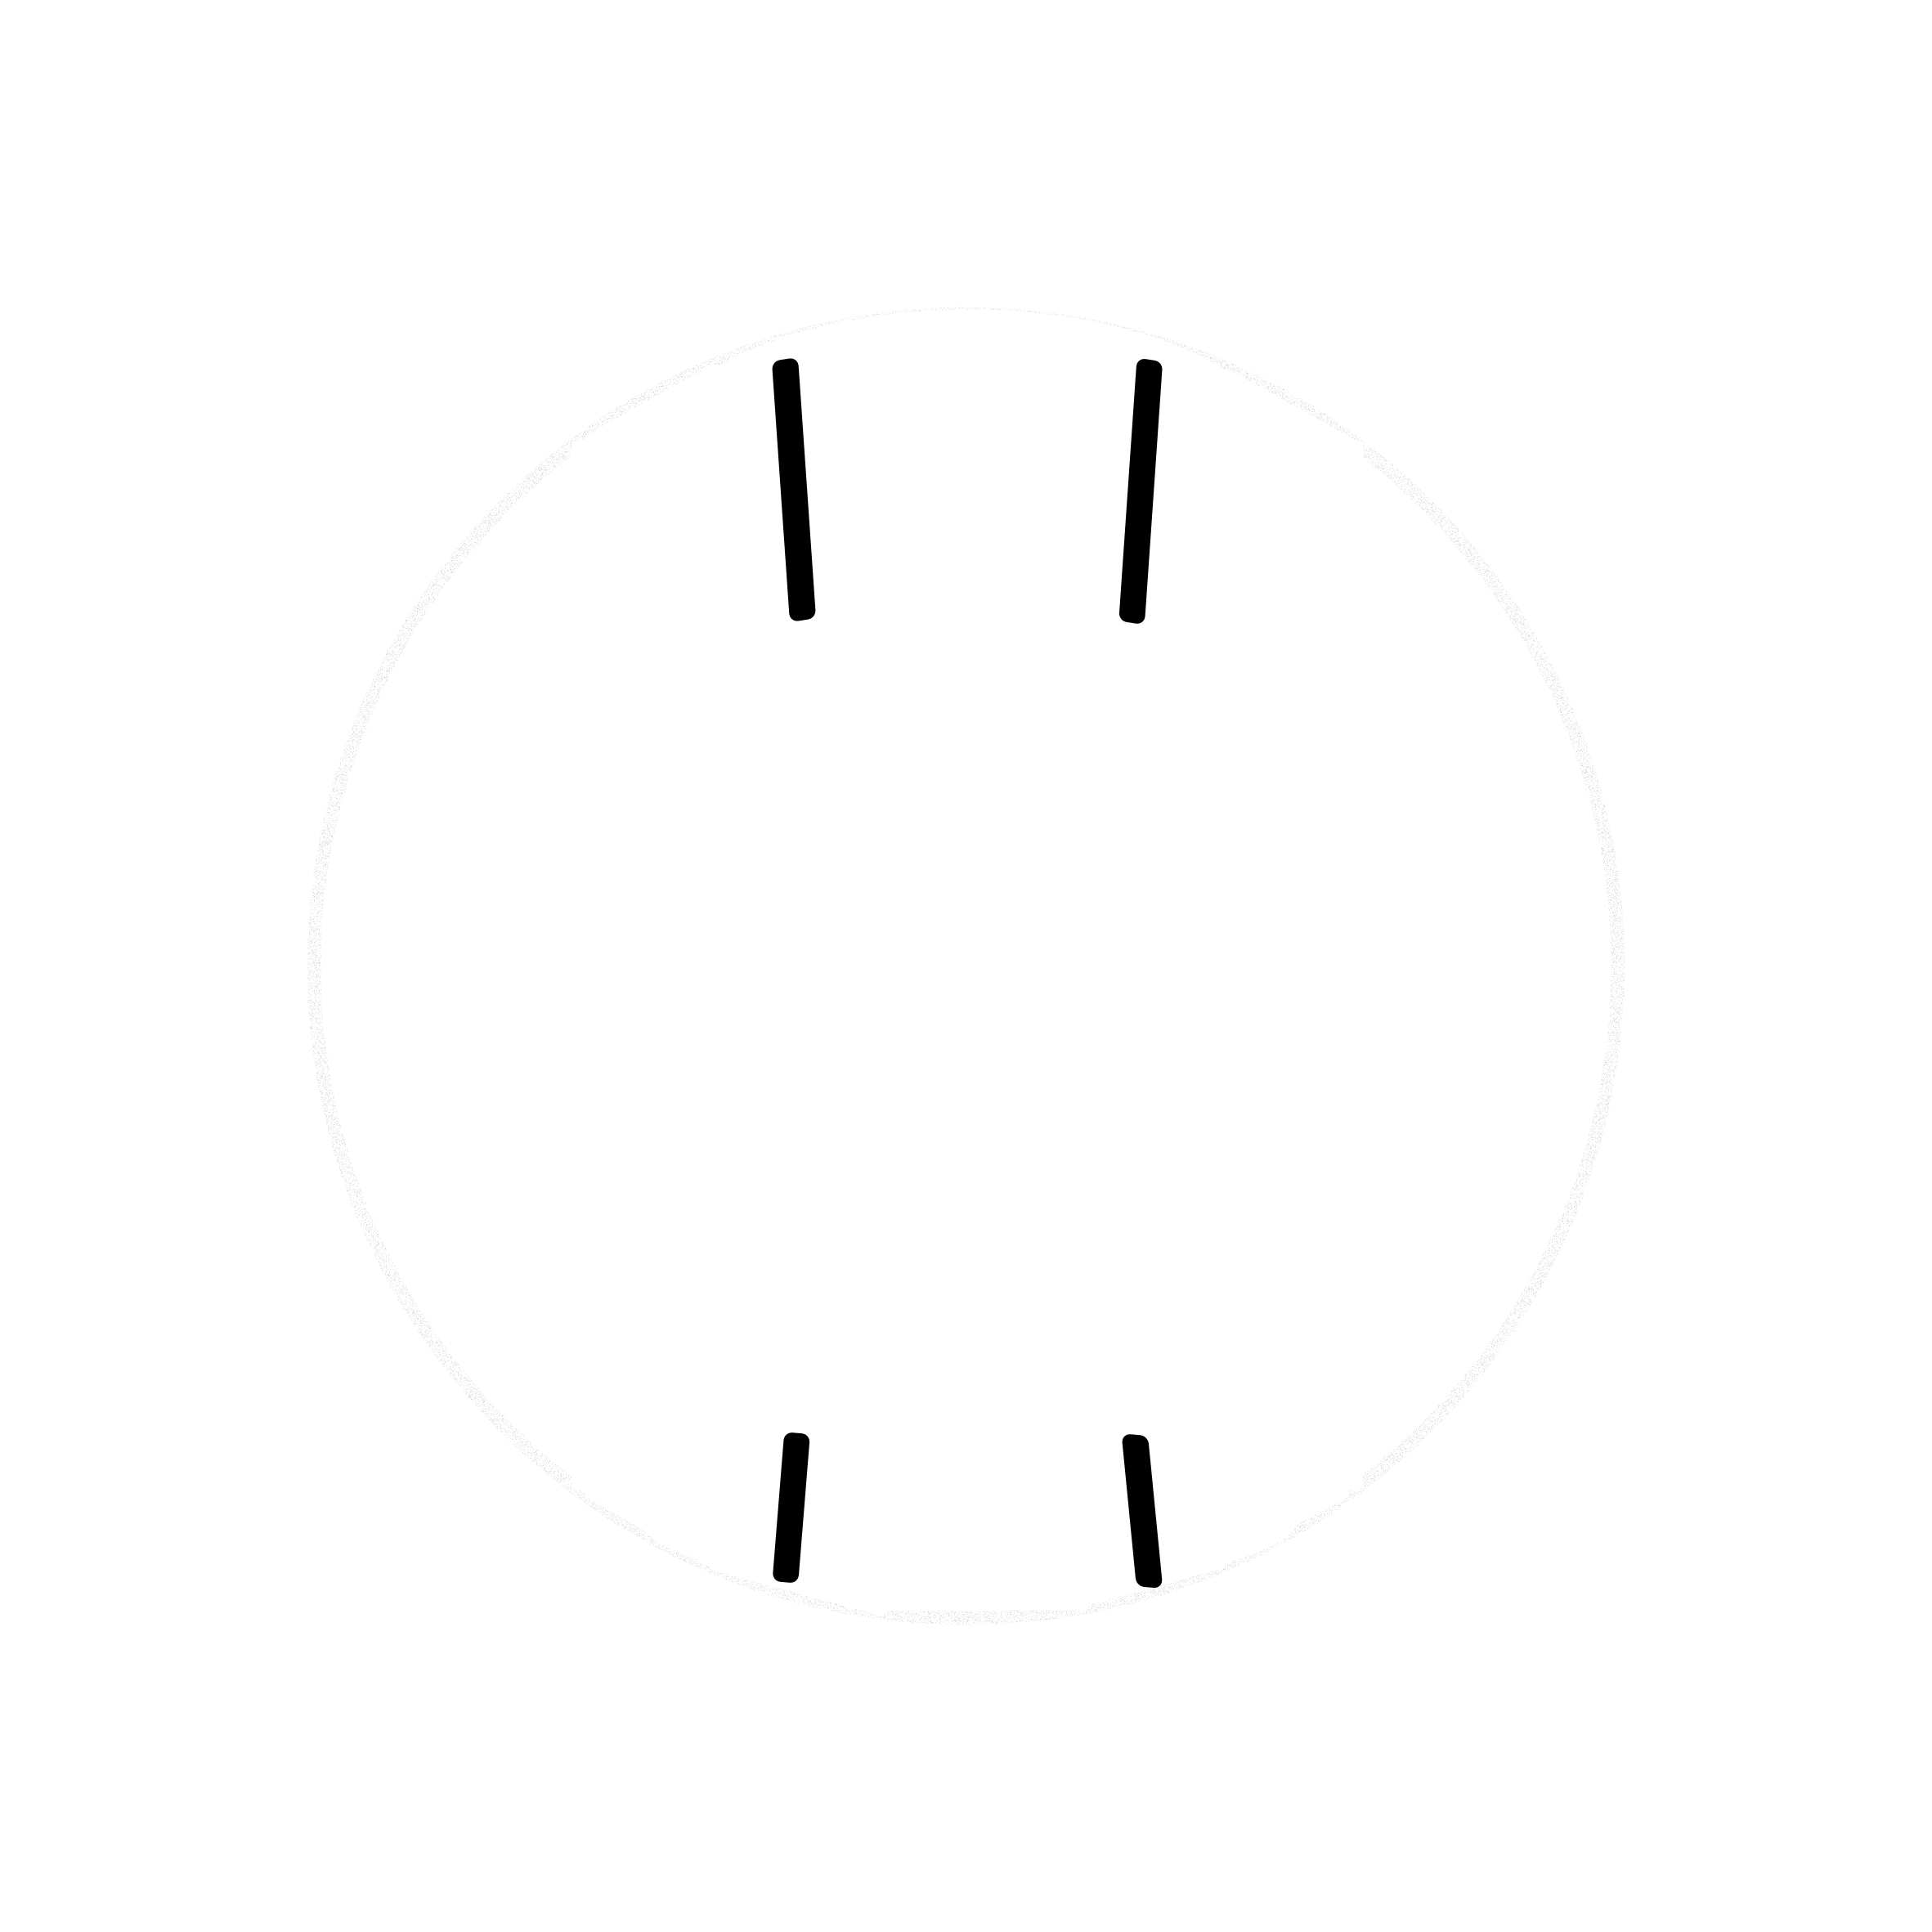 VC/TuS Hirschau logo black and white